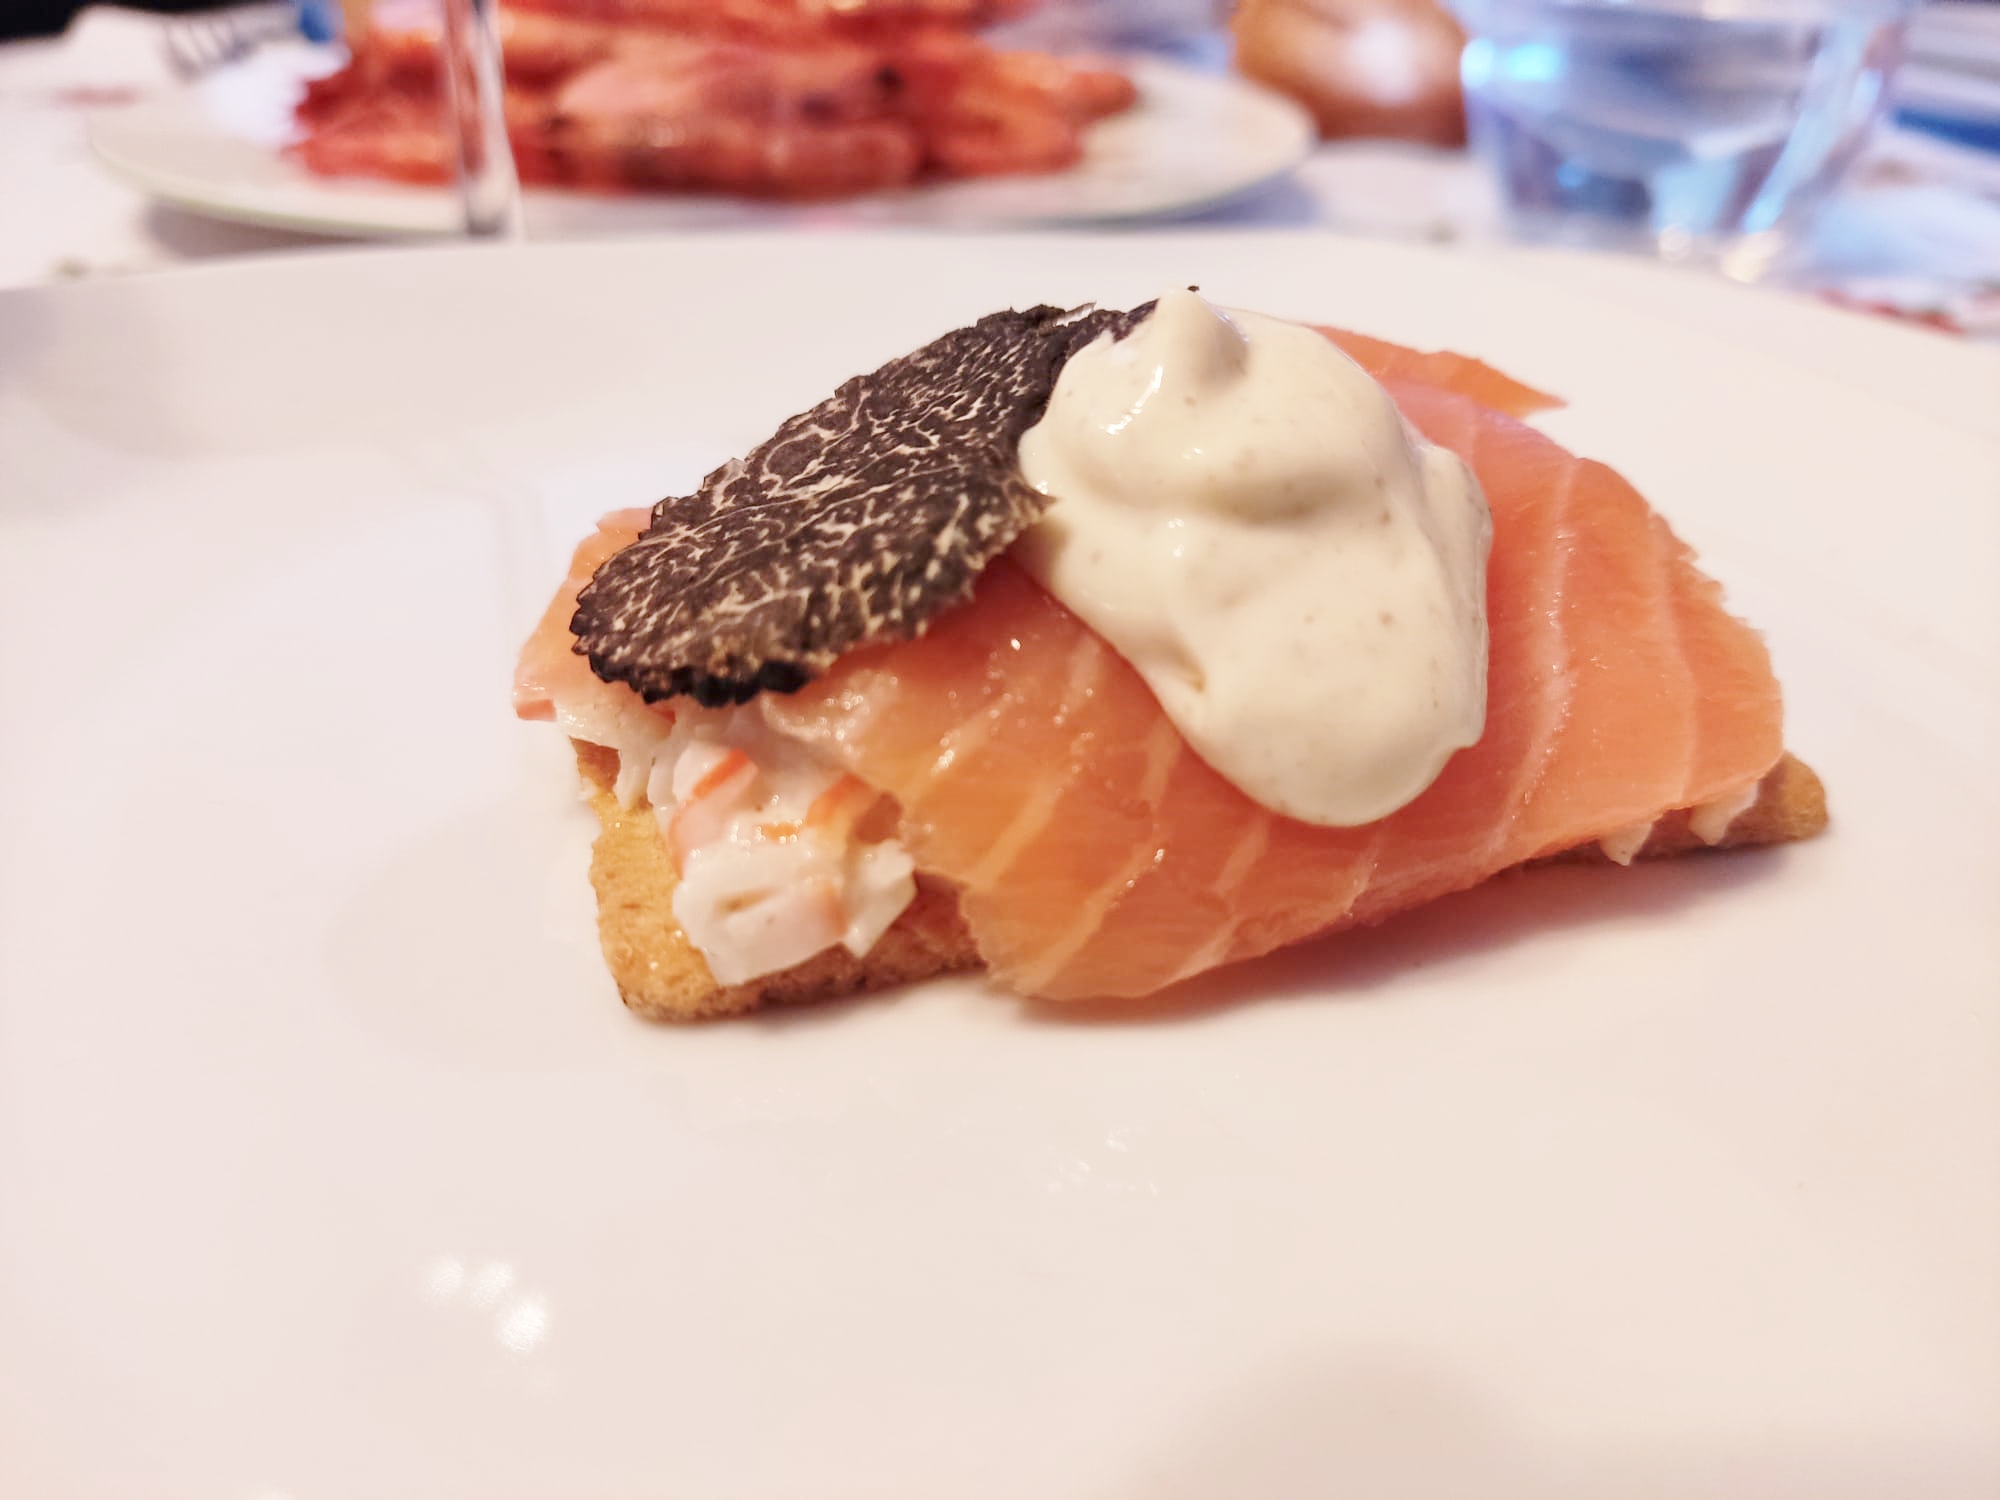 Salmon canapé with truffle mayonnaise